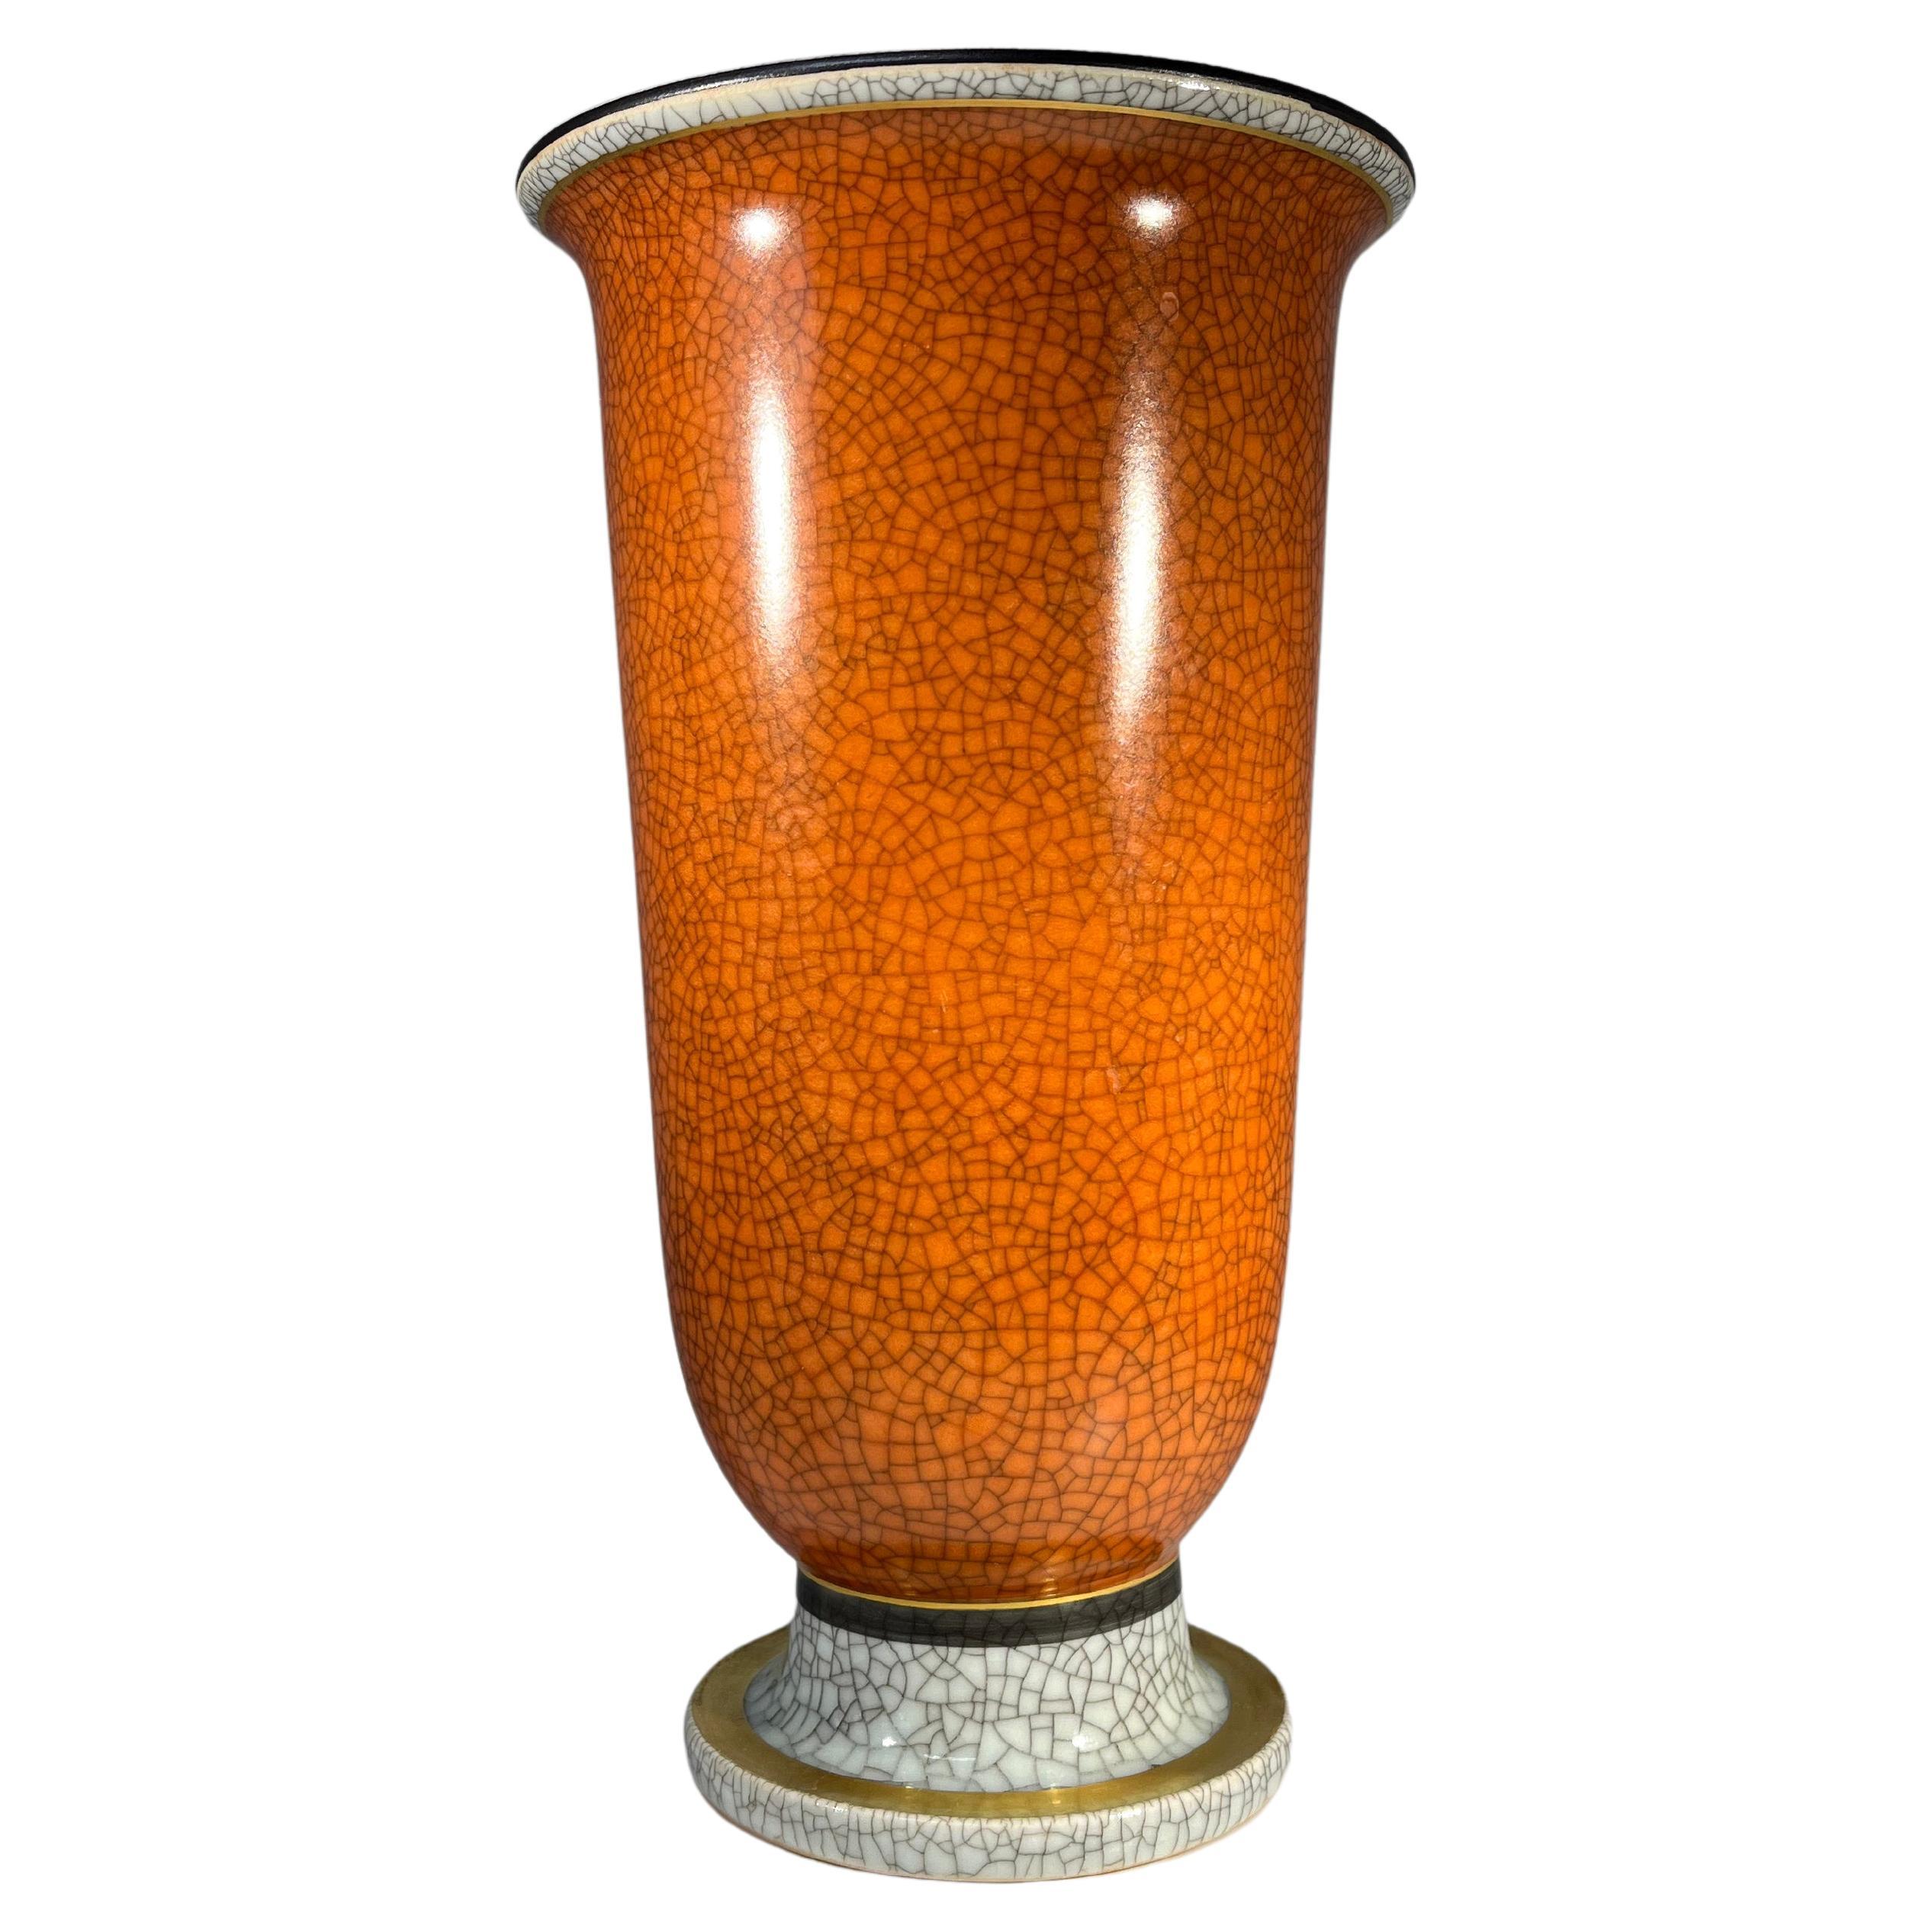 Thorkild Olsen, Royal Copenhagen, Terracotta Crackle Glazed Vase #3378